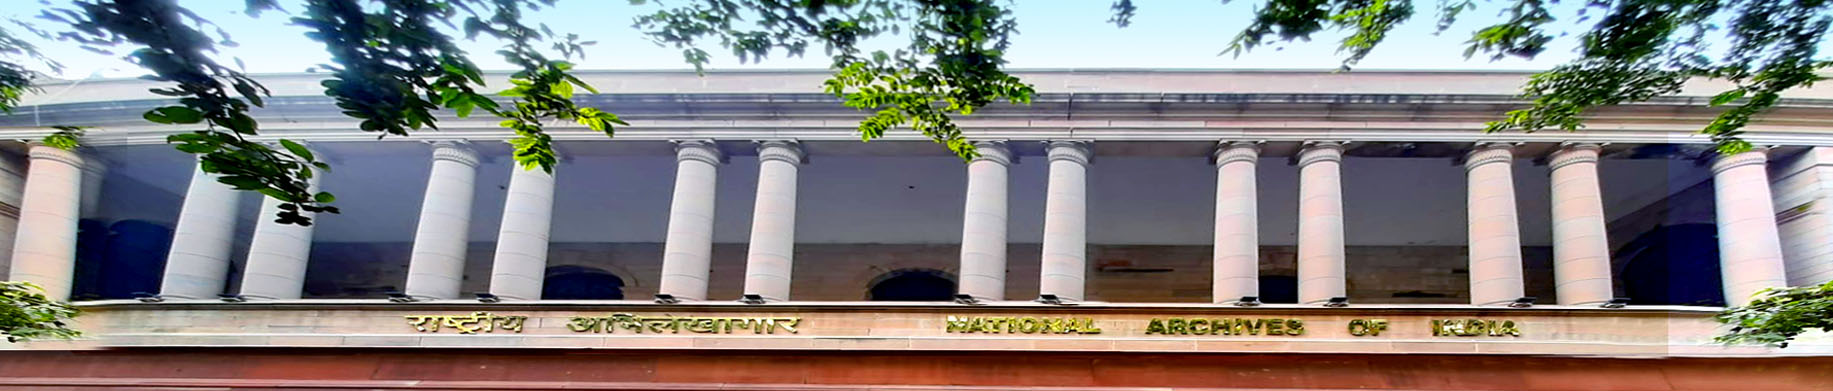 राष्ट्रीय अभिलेखागार में स्थायी प्रकृति के अभिलेखों के हस्तांतरण के लिए दिशानिर्देश